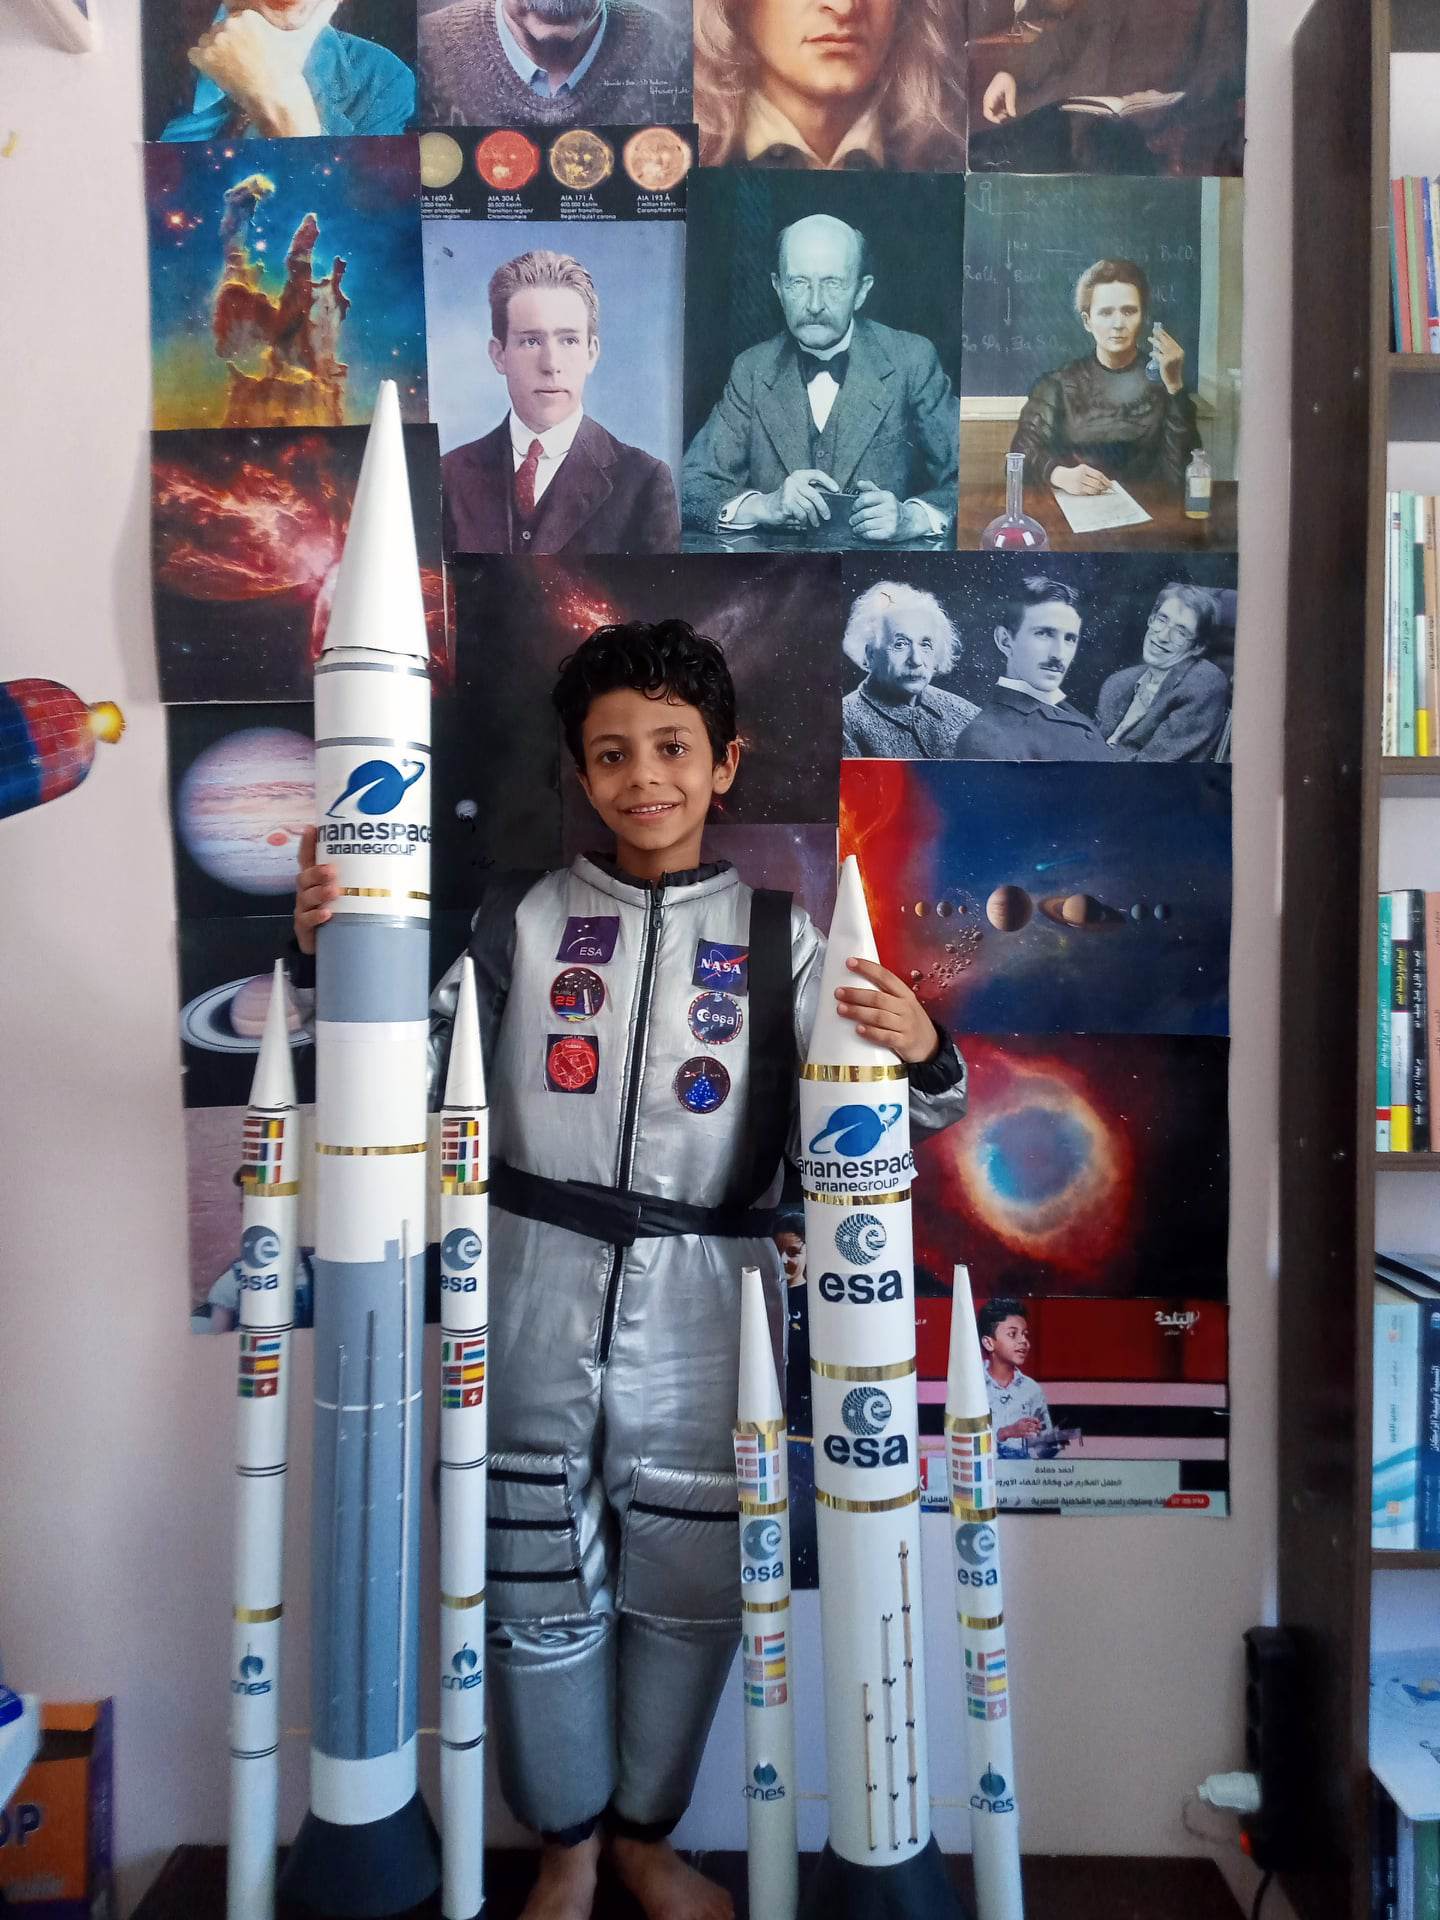 أحمد ببدلة تقليدية لبدلة رائد الفضاء داخل مكتبته